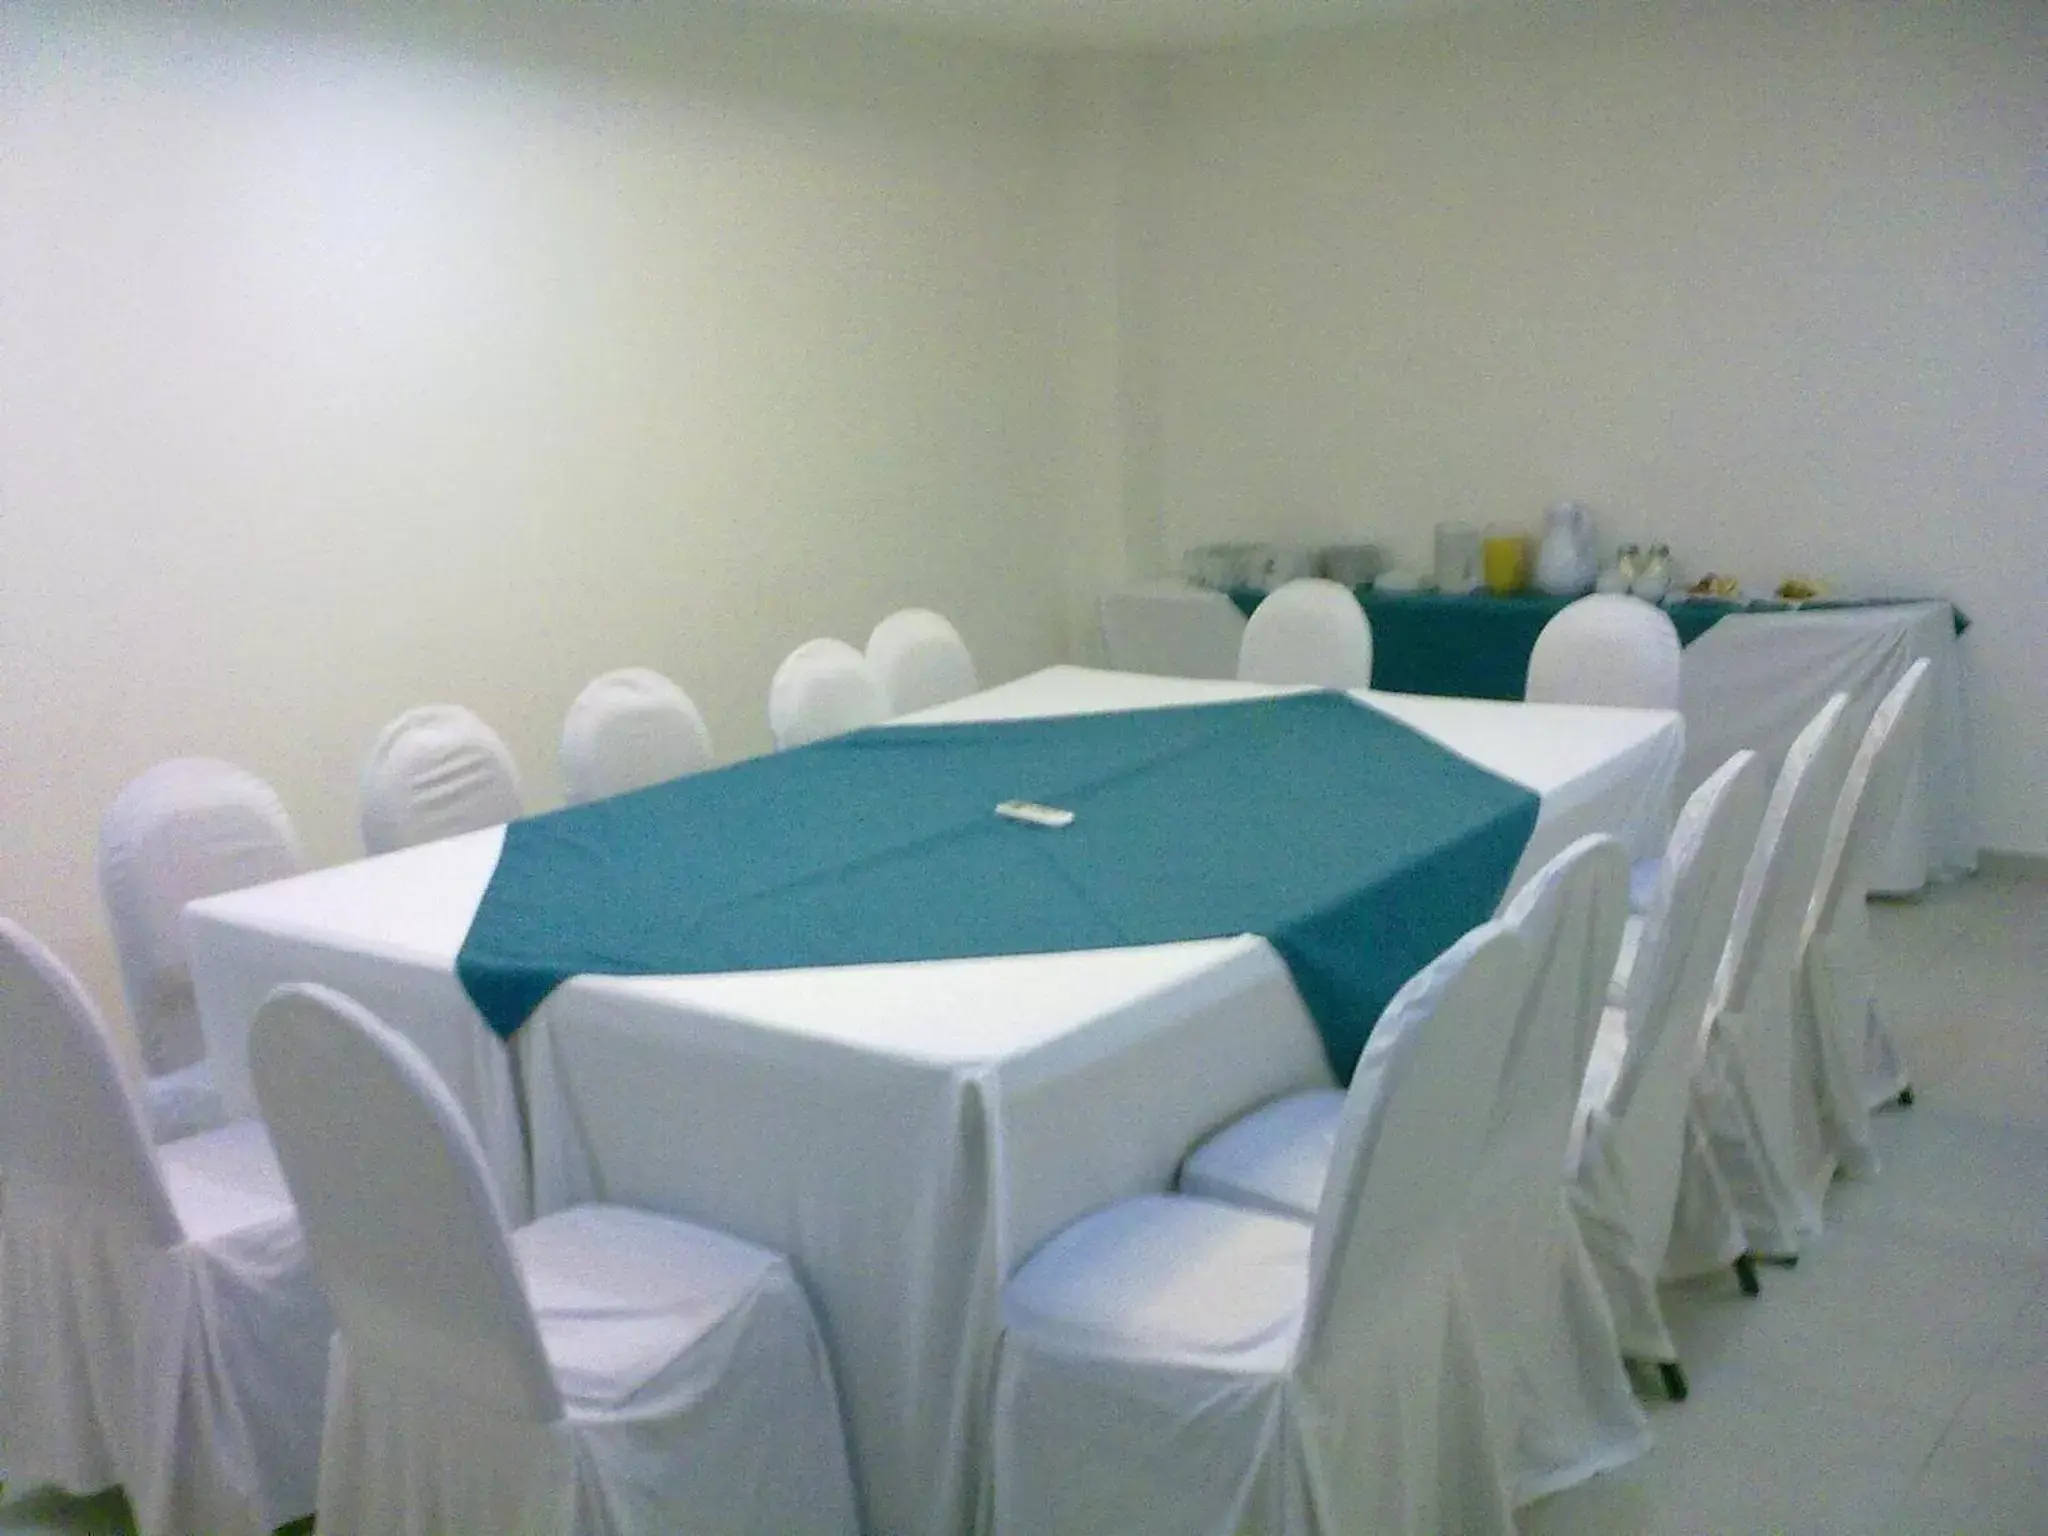 Banquet/Function facilities, Banquet Facilities in Nu Hotel